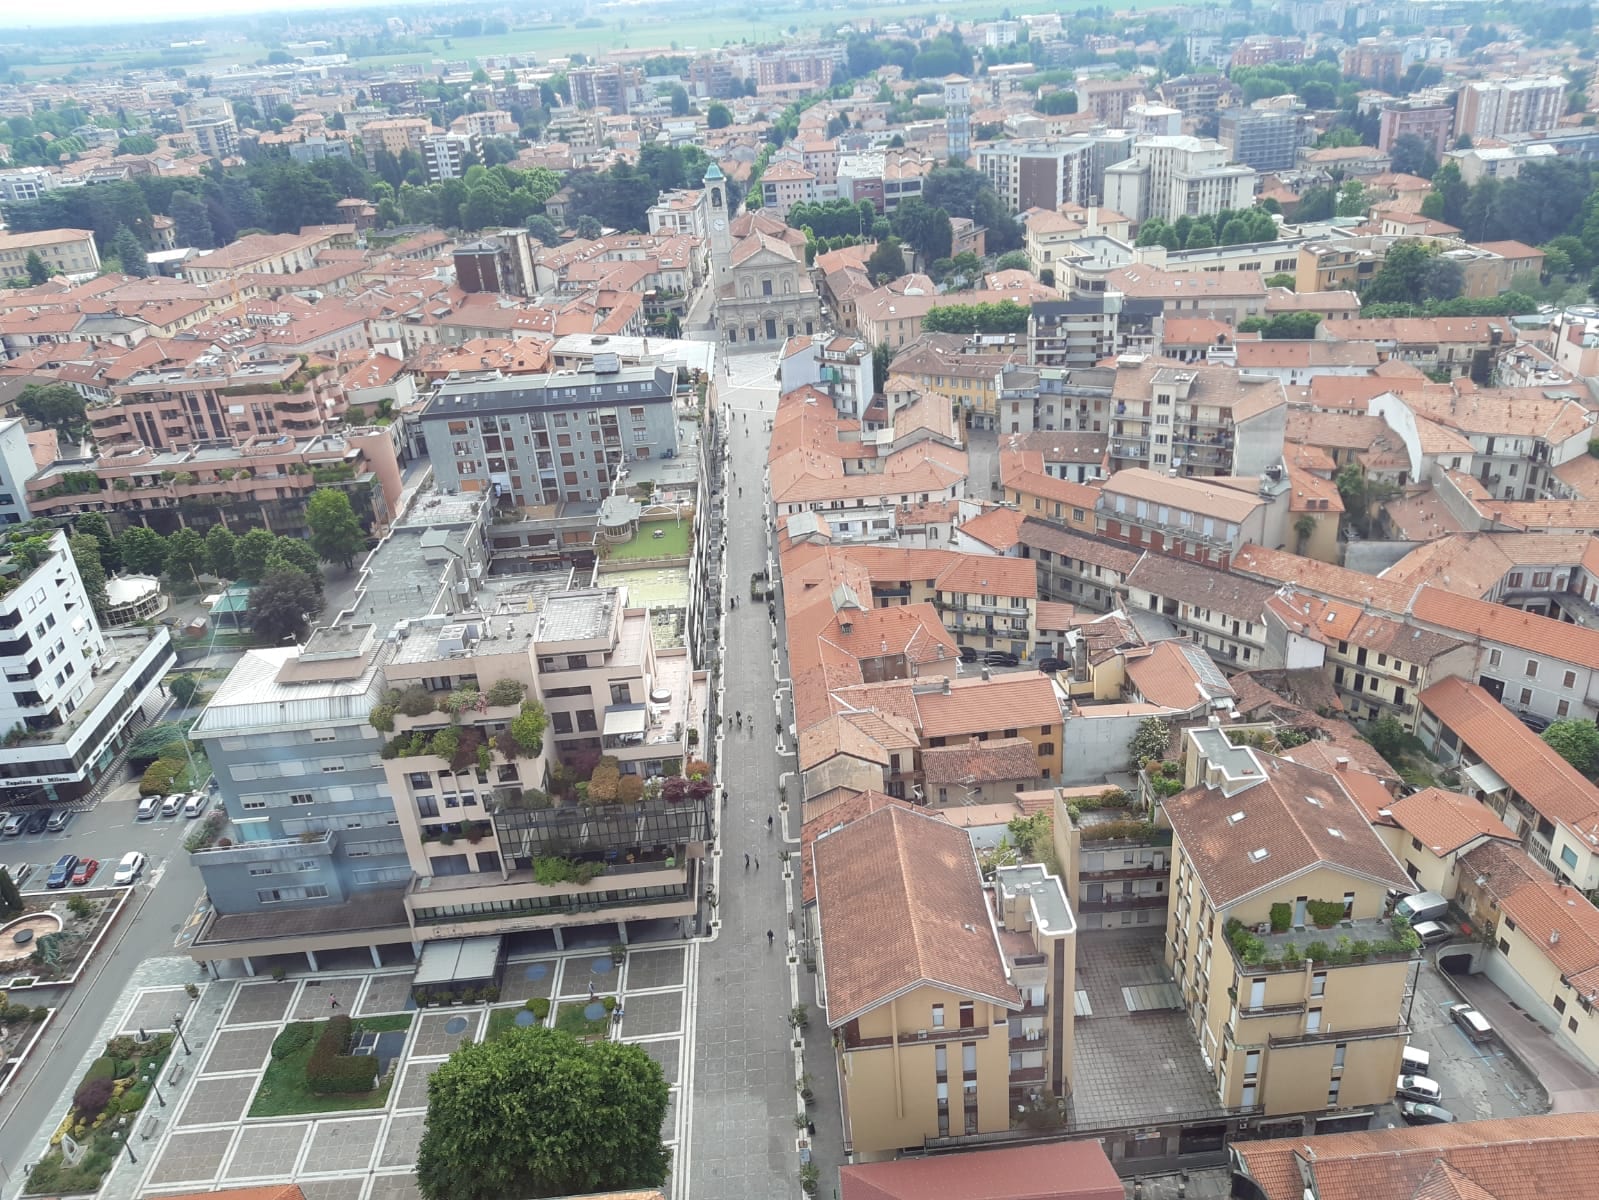 Tassa di soggiorno Saronno, Federalberghi Varese: “Non siamo stati interpellati dal Comune”